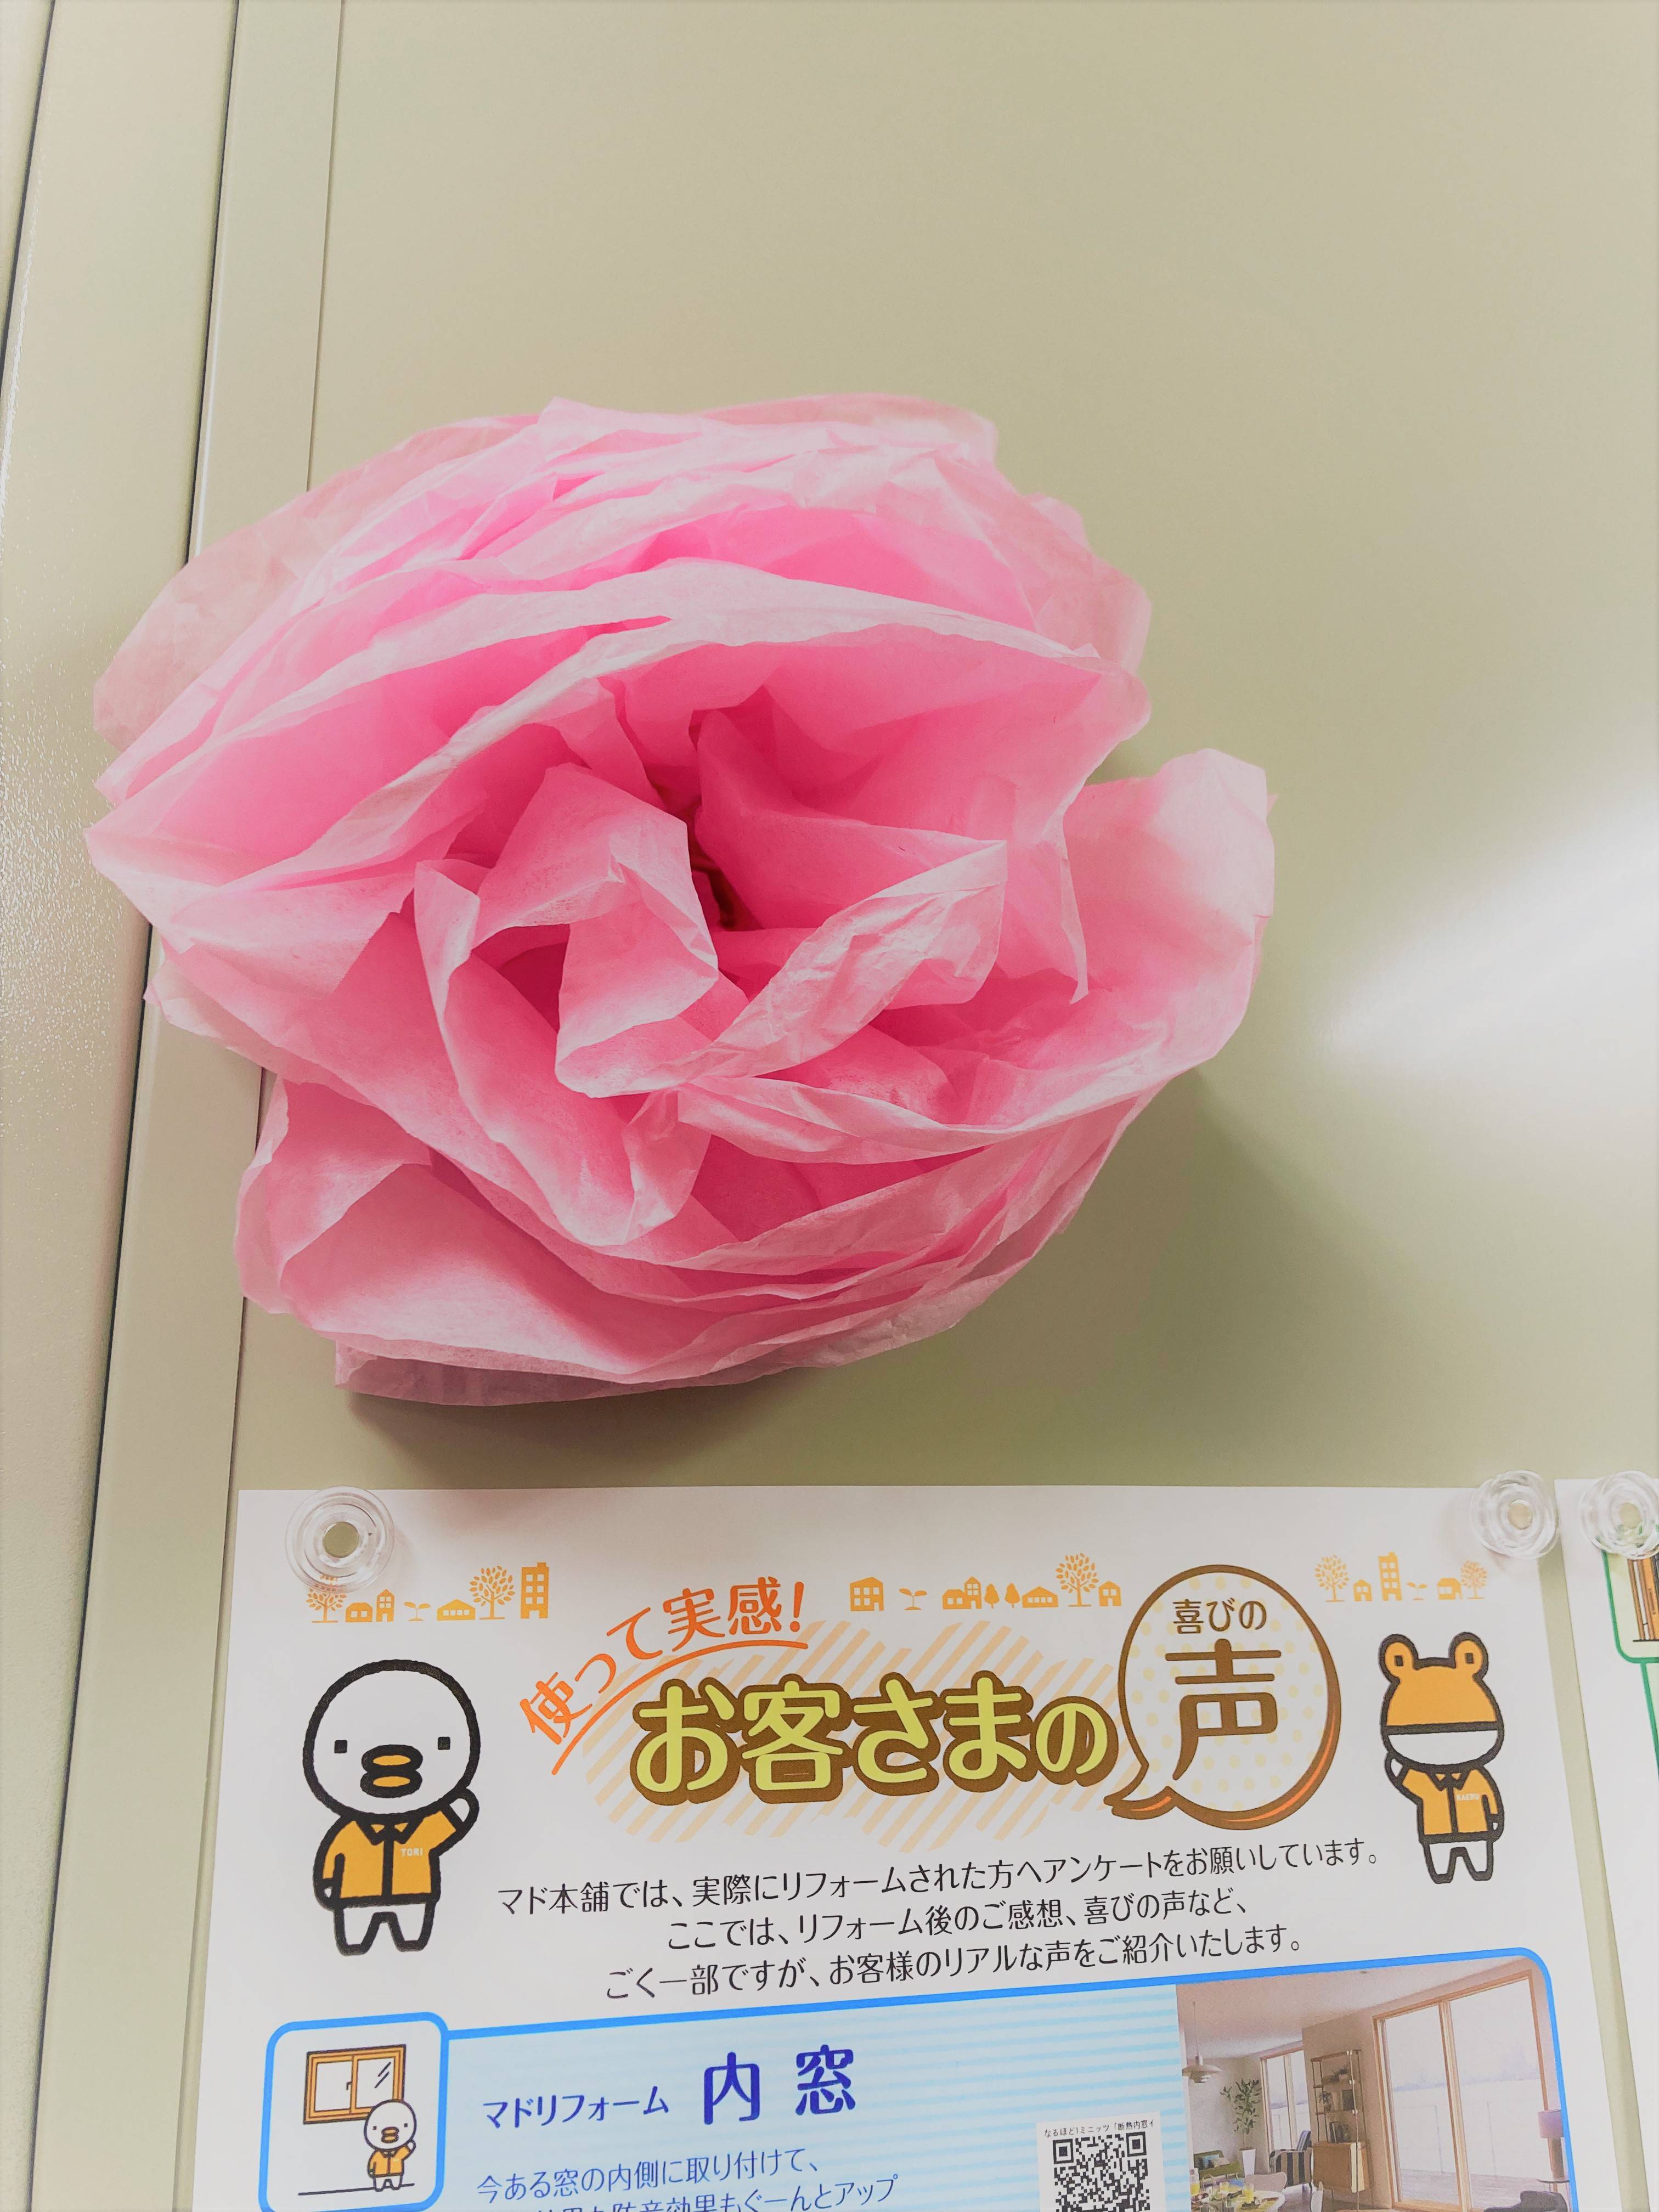 かわいいお花を頂きました🌸 スミック 渋川店のブログ 写真1